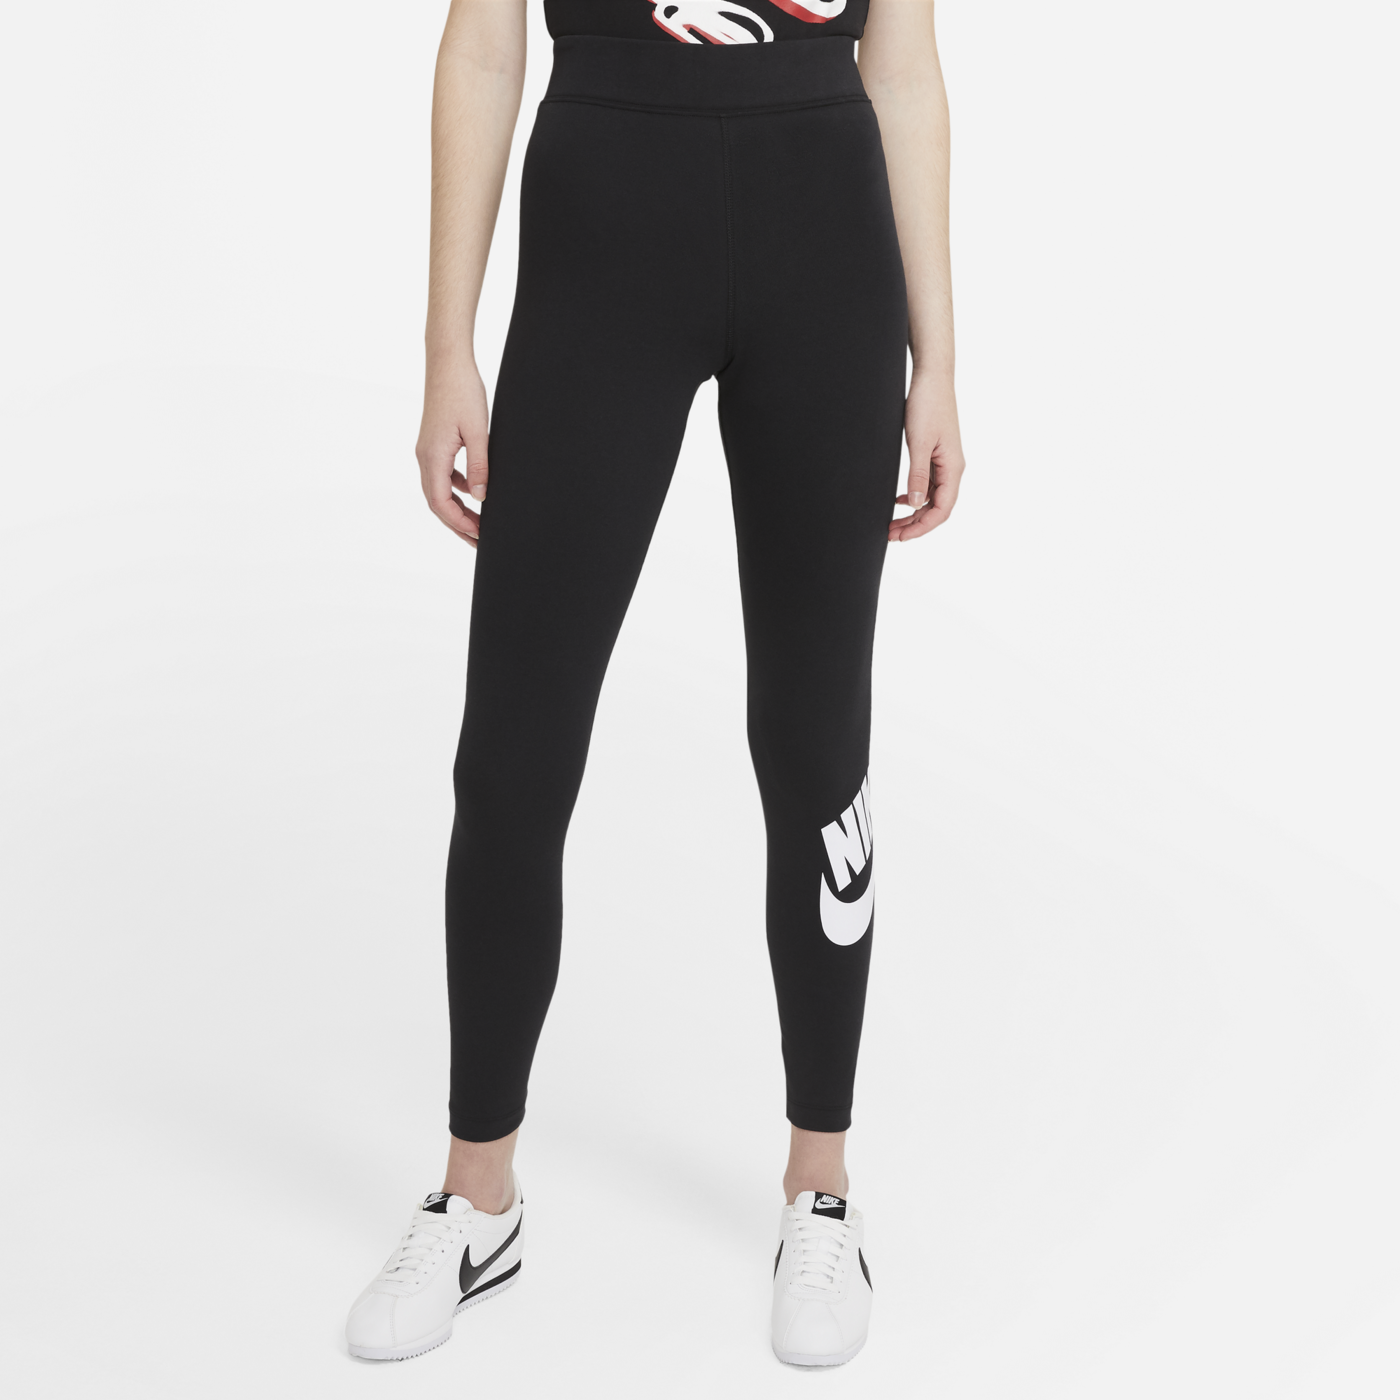 Nike Women Leggings Black CZ8528-010 - Sam Tabak